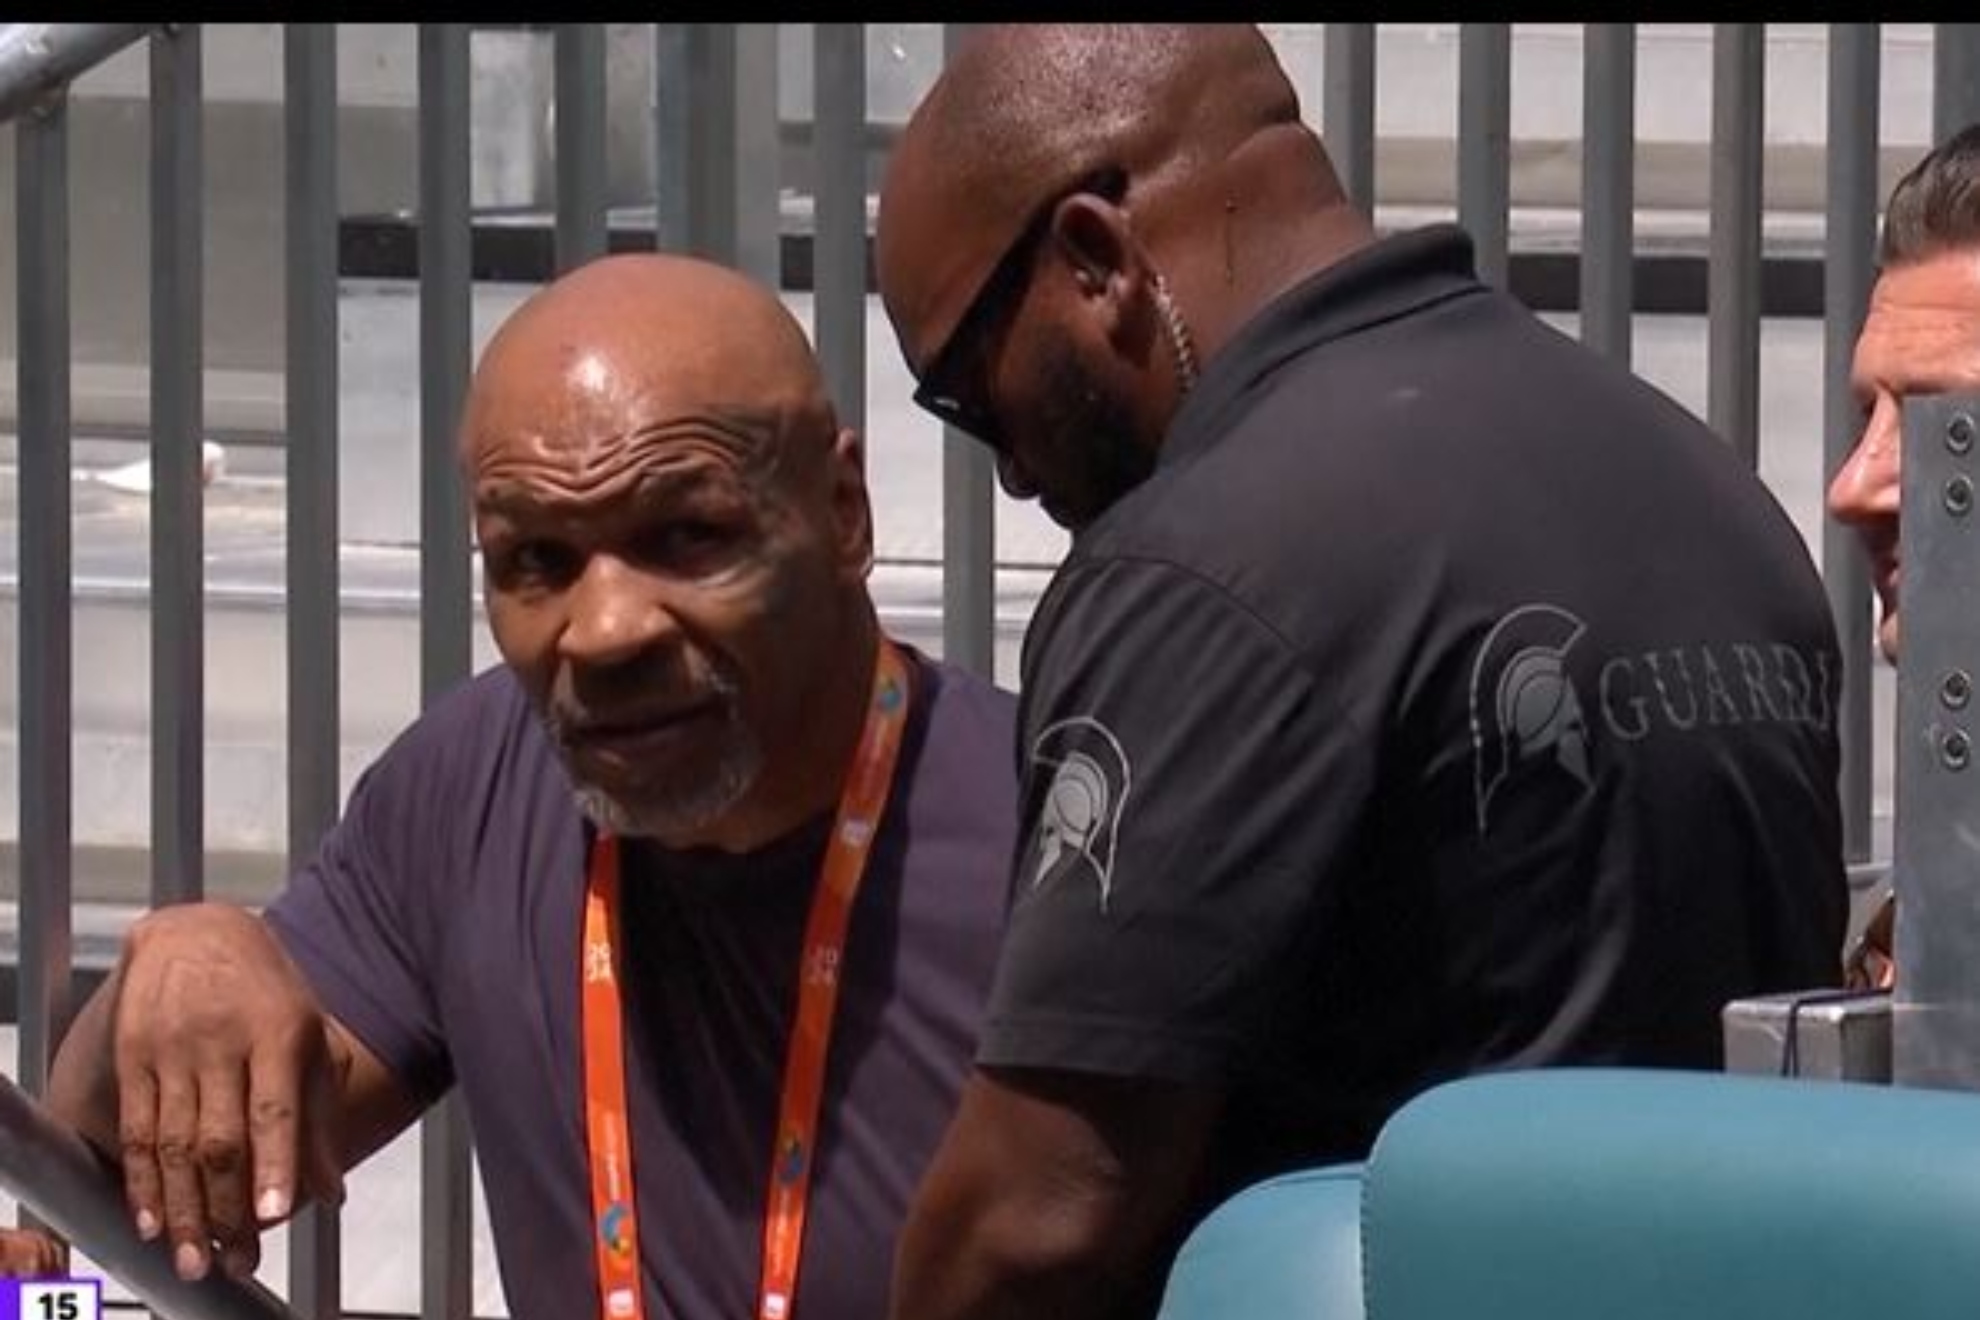 La regla del tenis de la que no se salva ni Mike Tyson: Detenido por un miembro de seguridad